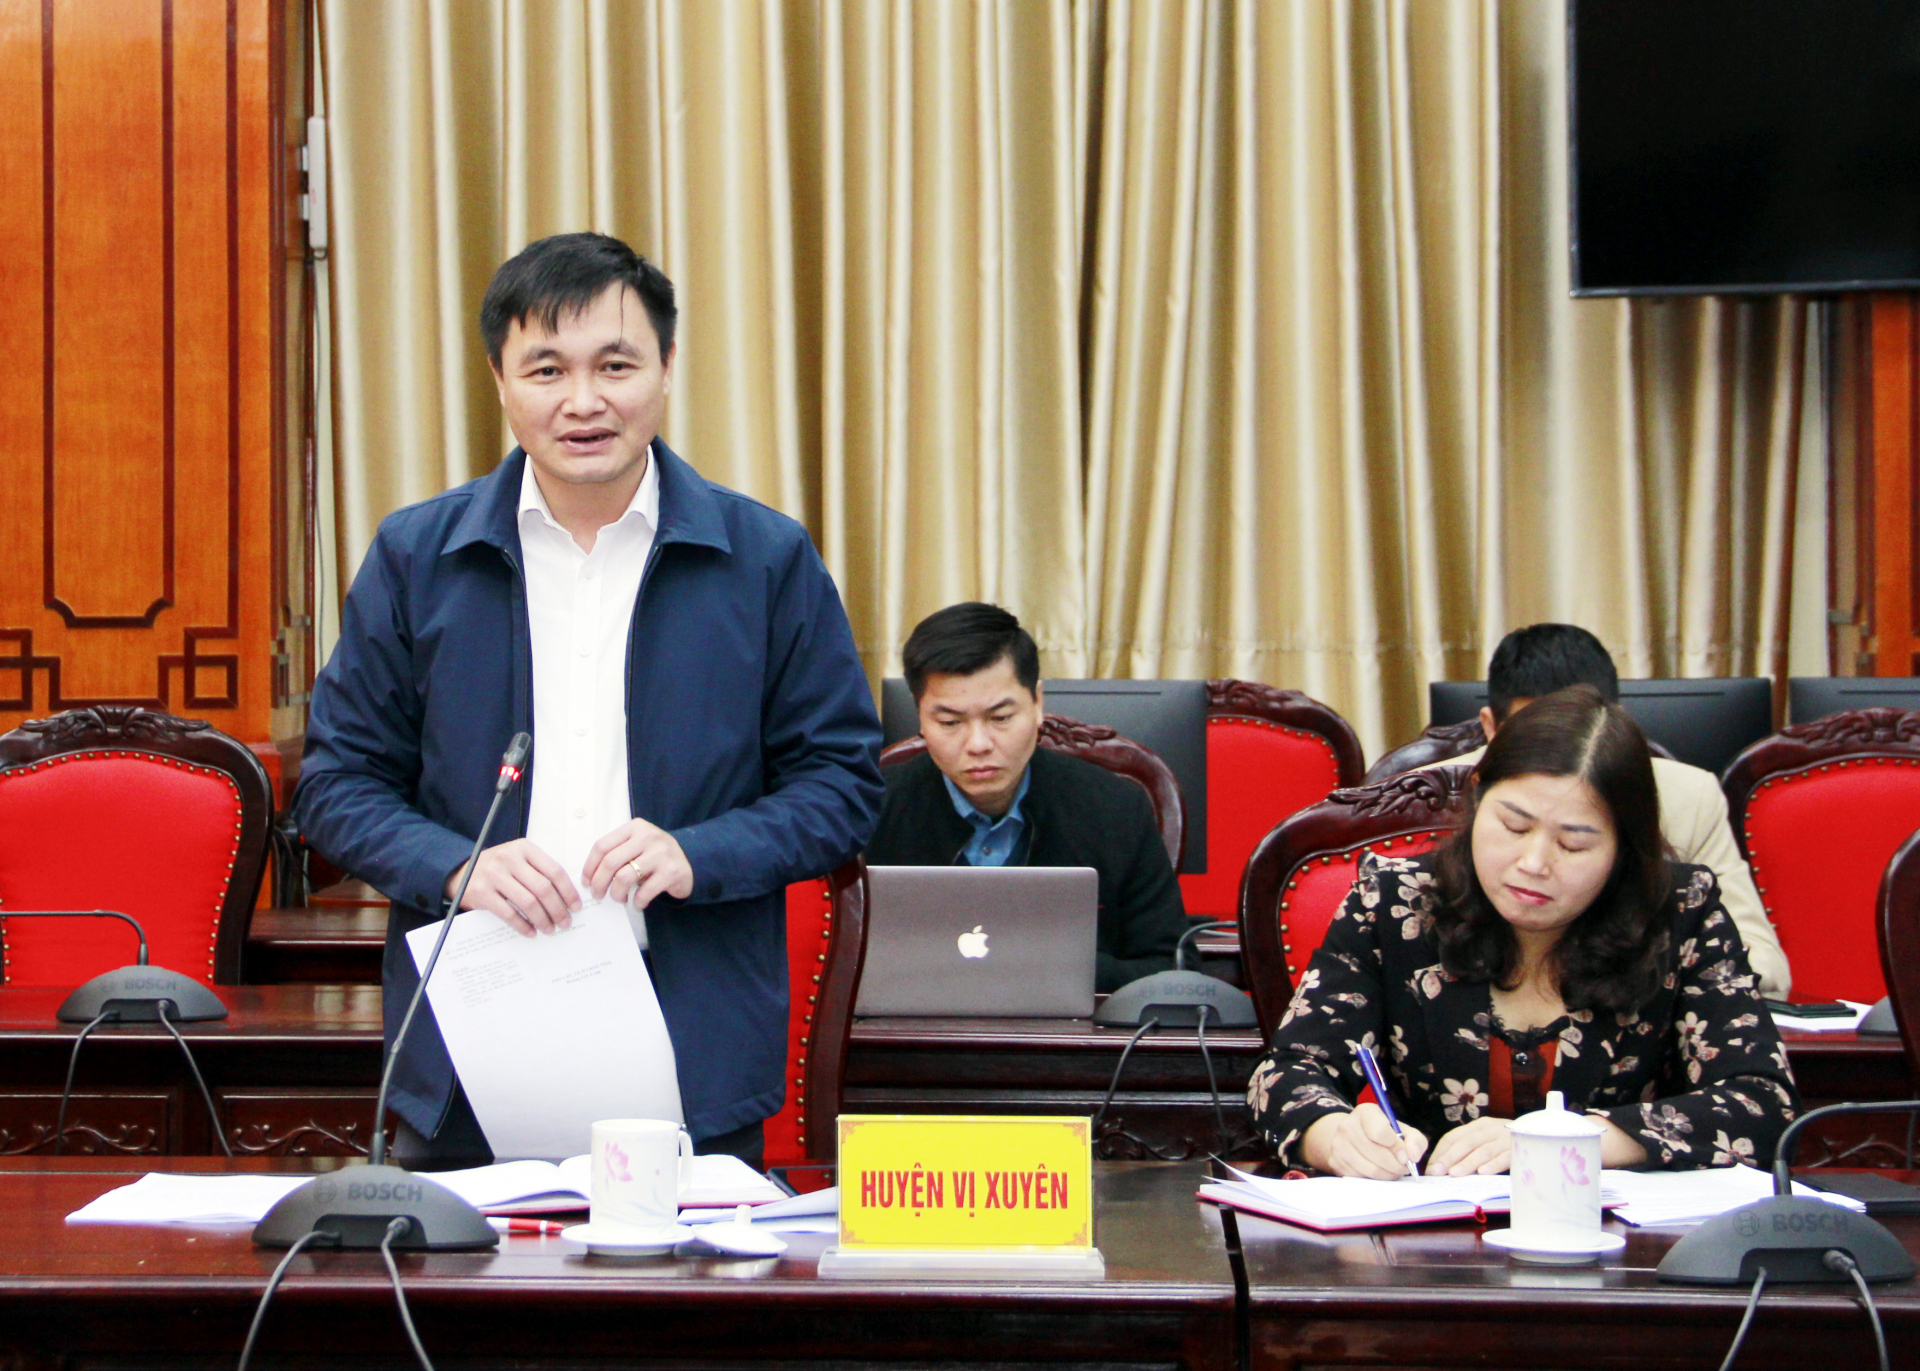 Bí thư Huyện ủy Vị Xuyên Đỗ Anh Tuấn phát biểu tại cuộc họp.